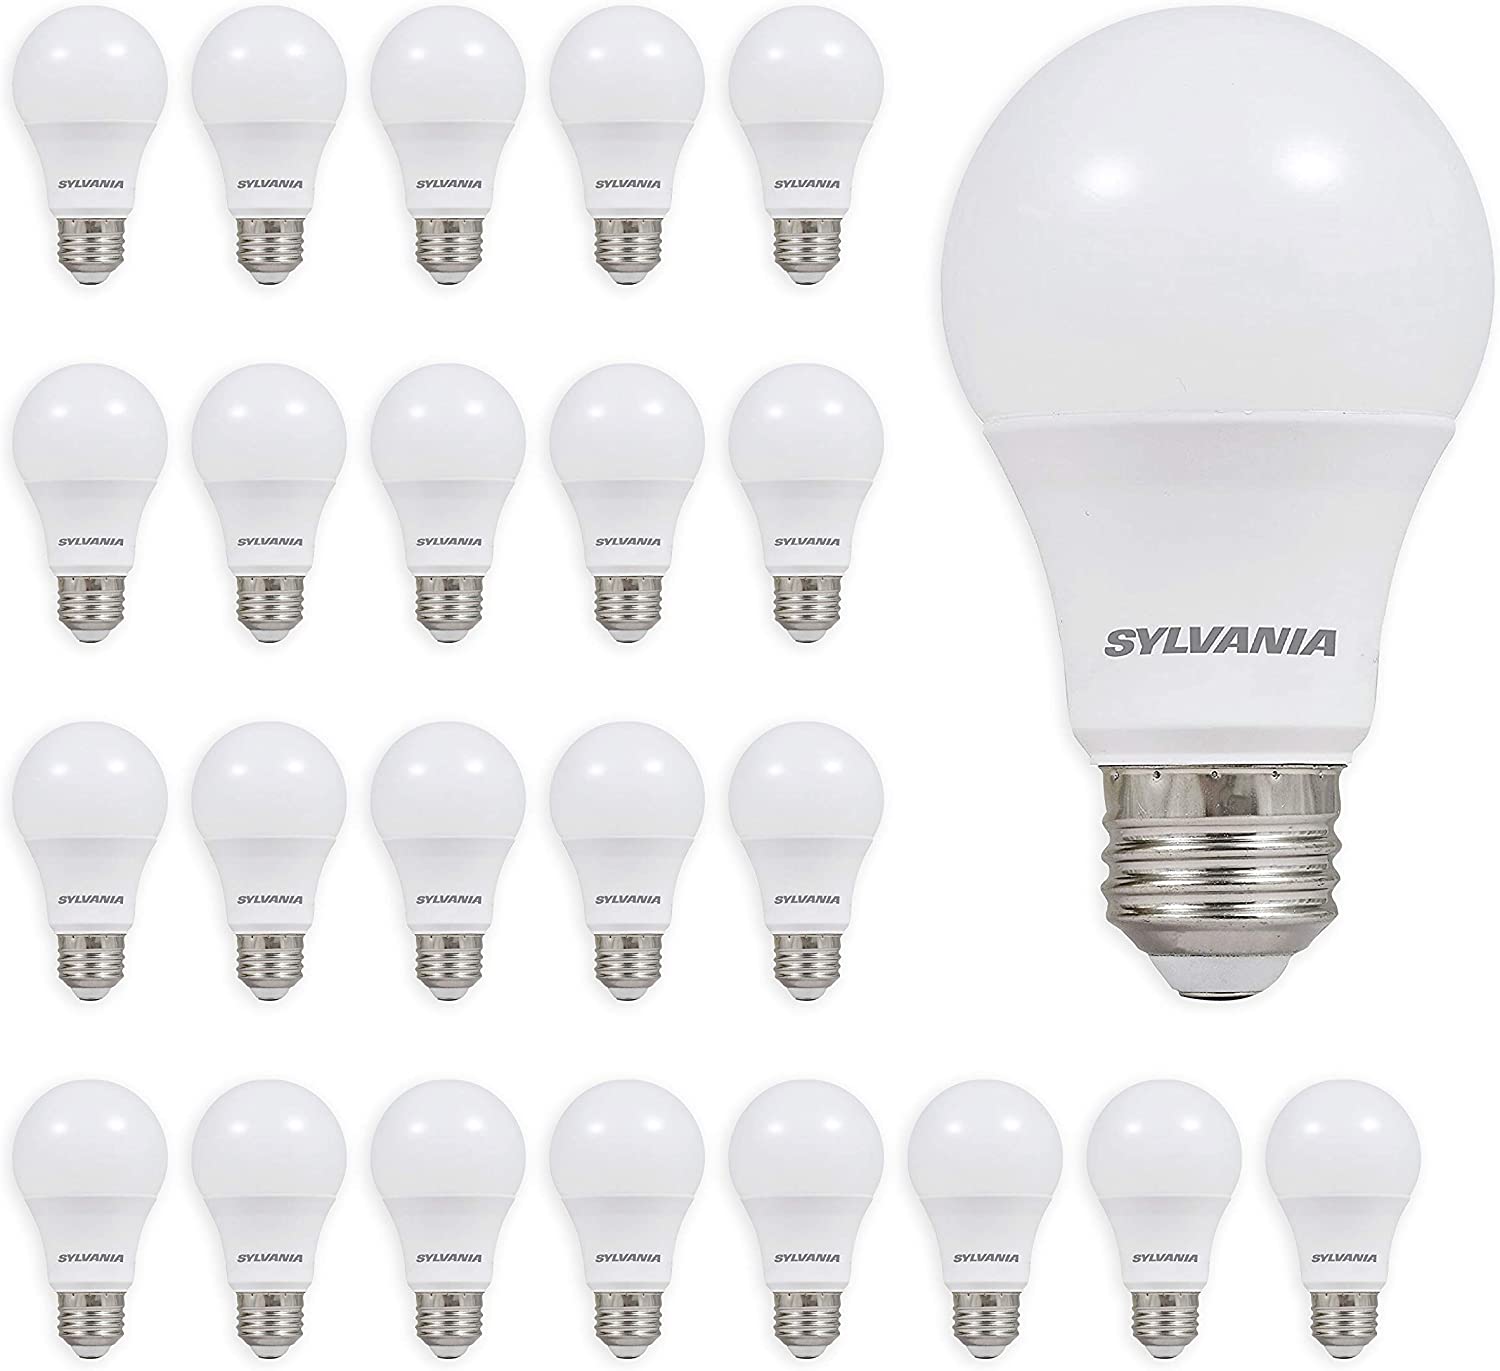 SYLVANIA A19 Soft White LED Lightbulb, 24-Pack